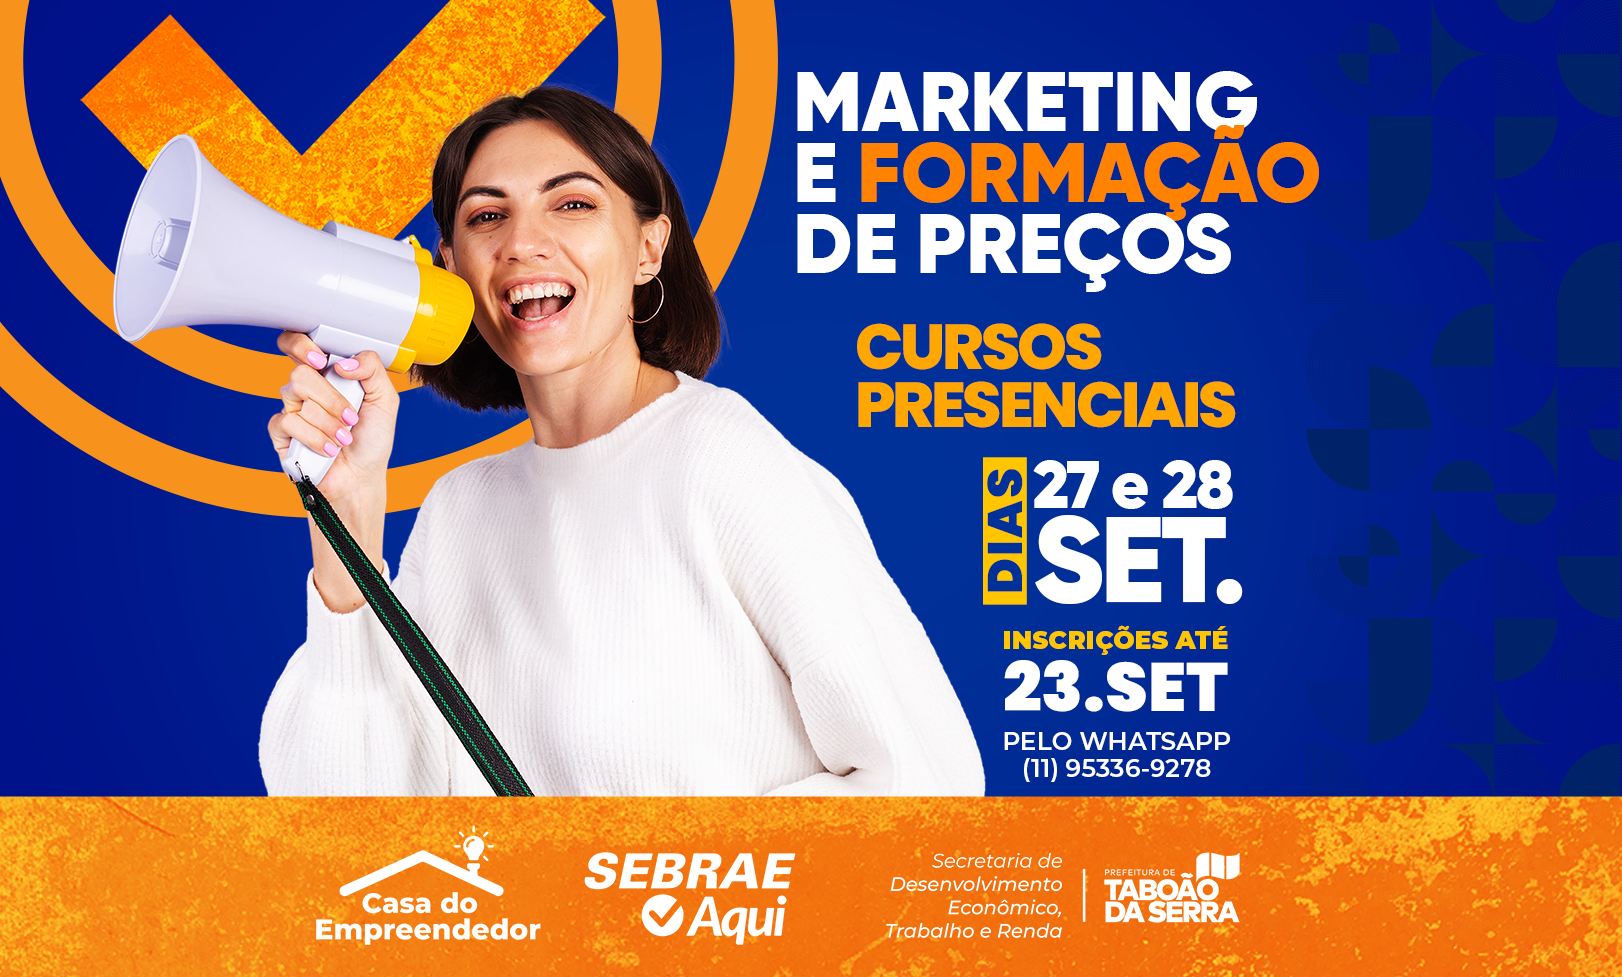 ARTE - Prefeitura de Taboão da Serra e Sebrae Aqui oferecem cursos gratuitos de Marketing e Formação de Preço